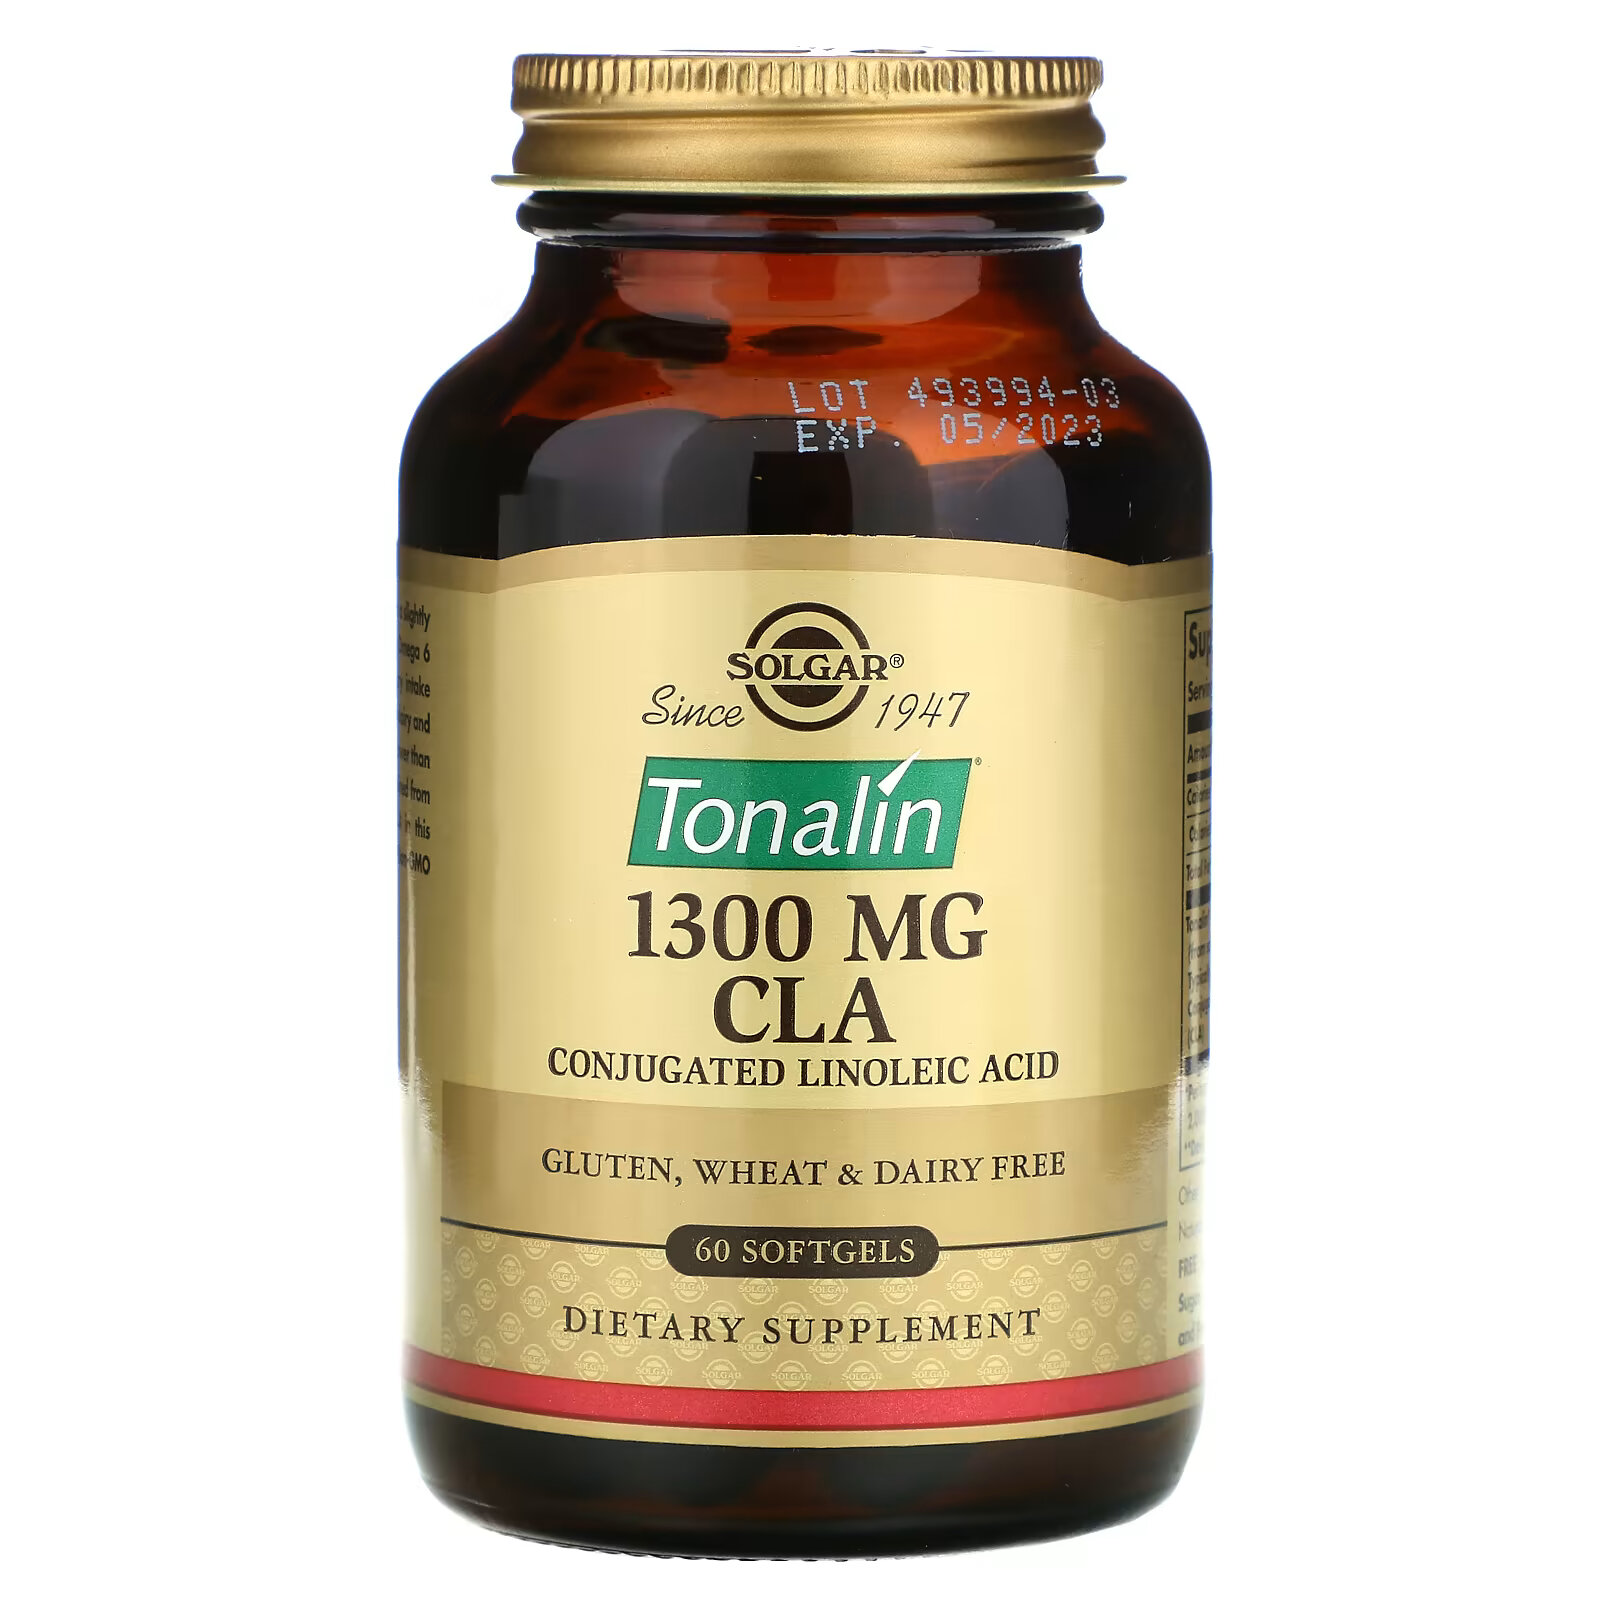 natrol tonalin конъюгированная линолевая кислота клк 1200 мг 90 мягких желатиновых капсул Solgar, Tonalin CLA, конъюгированная линолевая кислота (КЛК), 1300 мг, 60 мягких таблеток